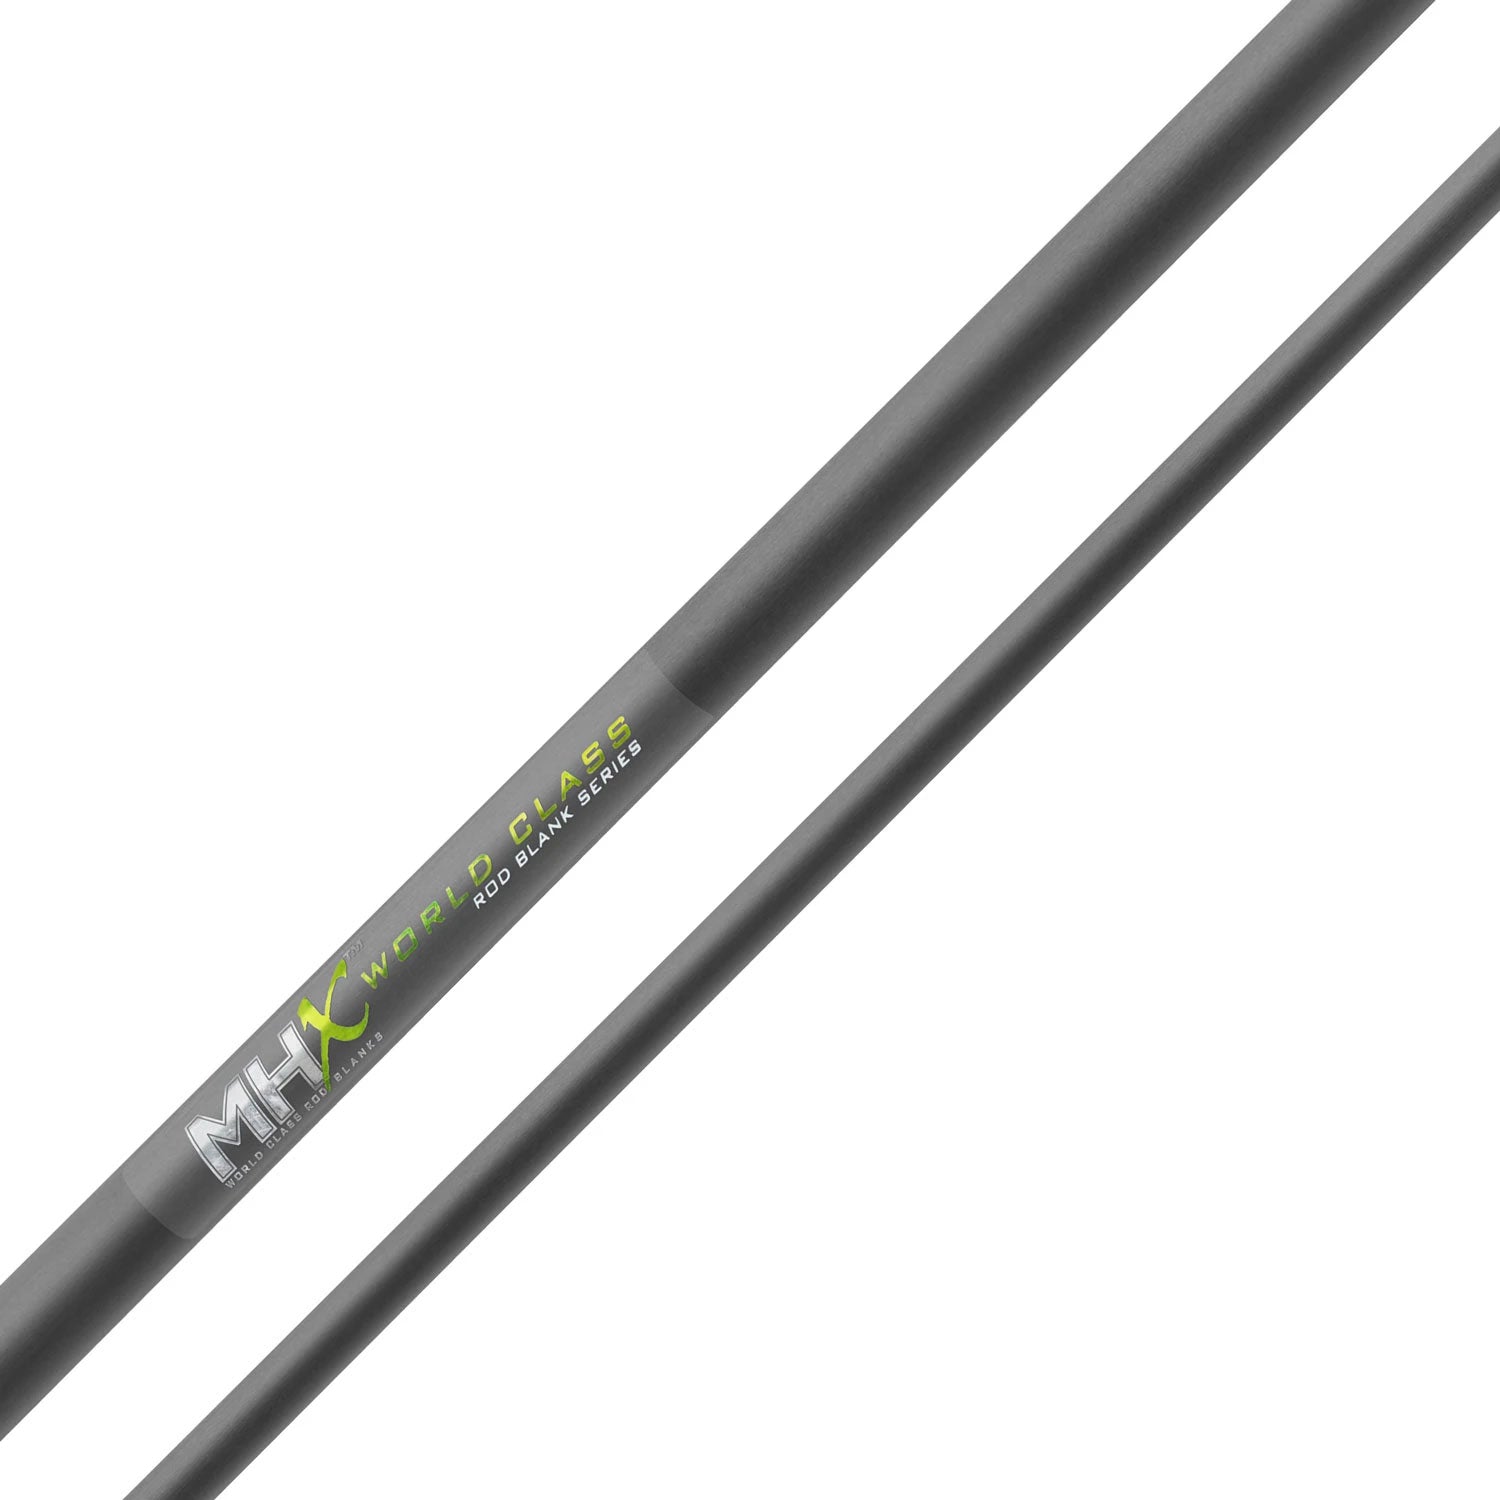 MHX 8'6" Medium Steelhead Rod Blank - ST1023-MHX